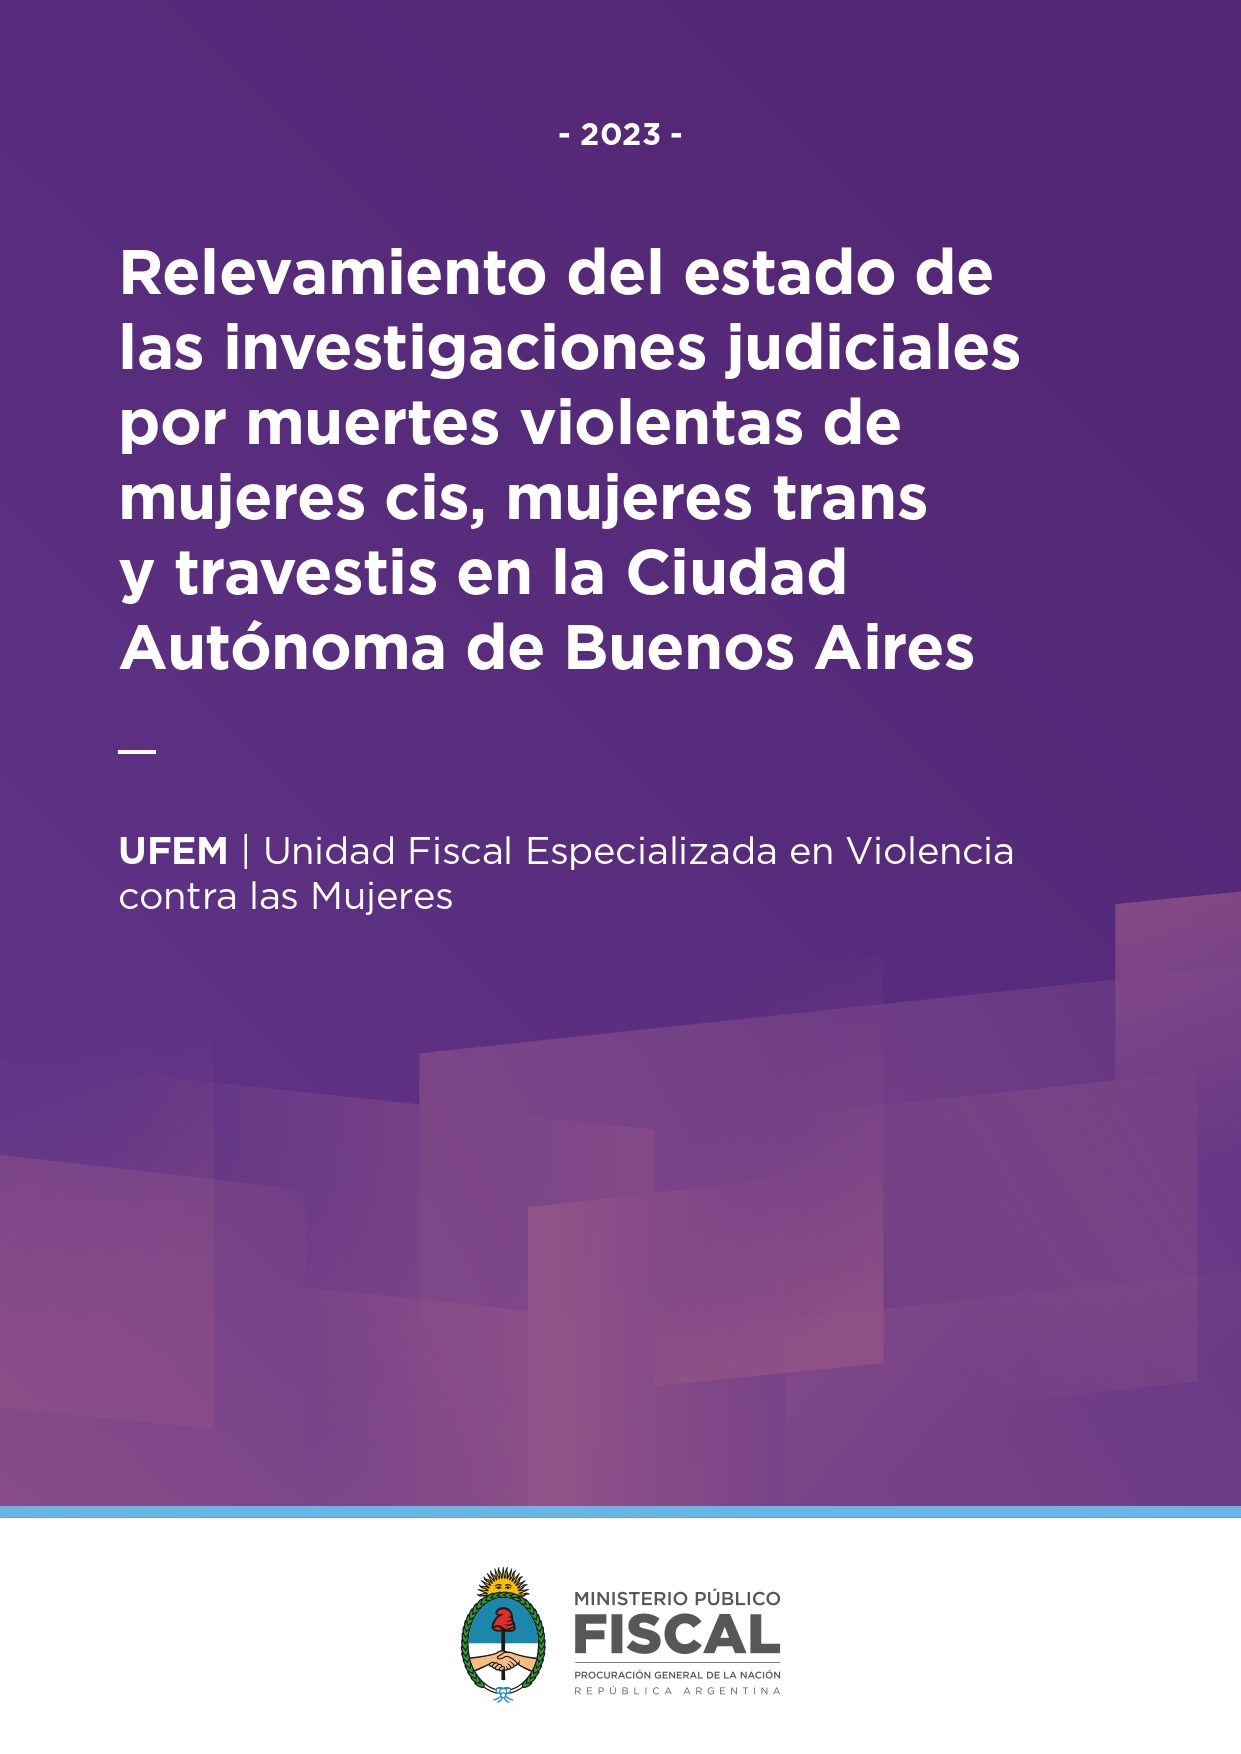 Relevamiento del estado de las investigaciones judiciales por muertes violentas de mujeres cis, mujeres trans y travestis en la Ciudad Autónoma de Buenos Aires